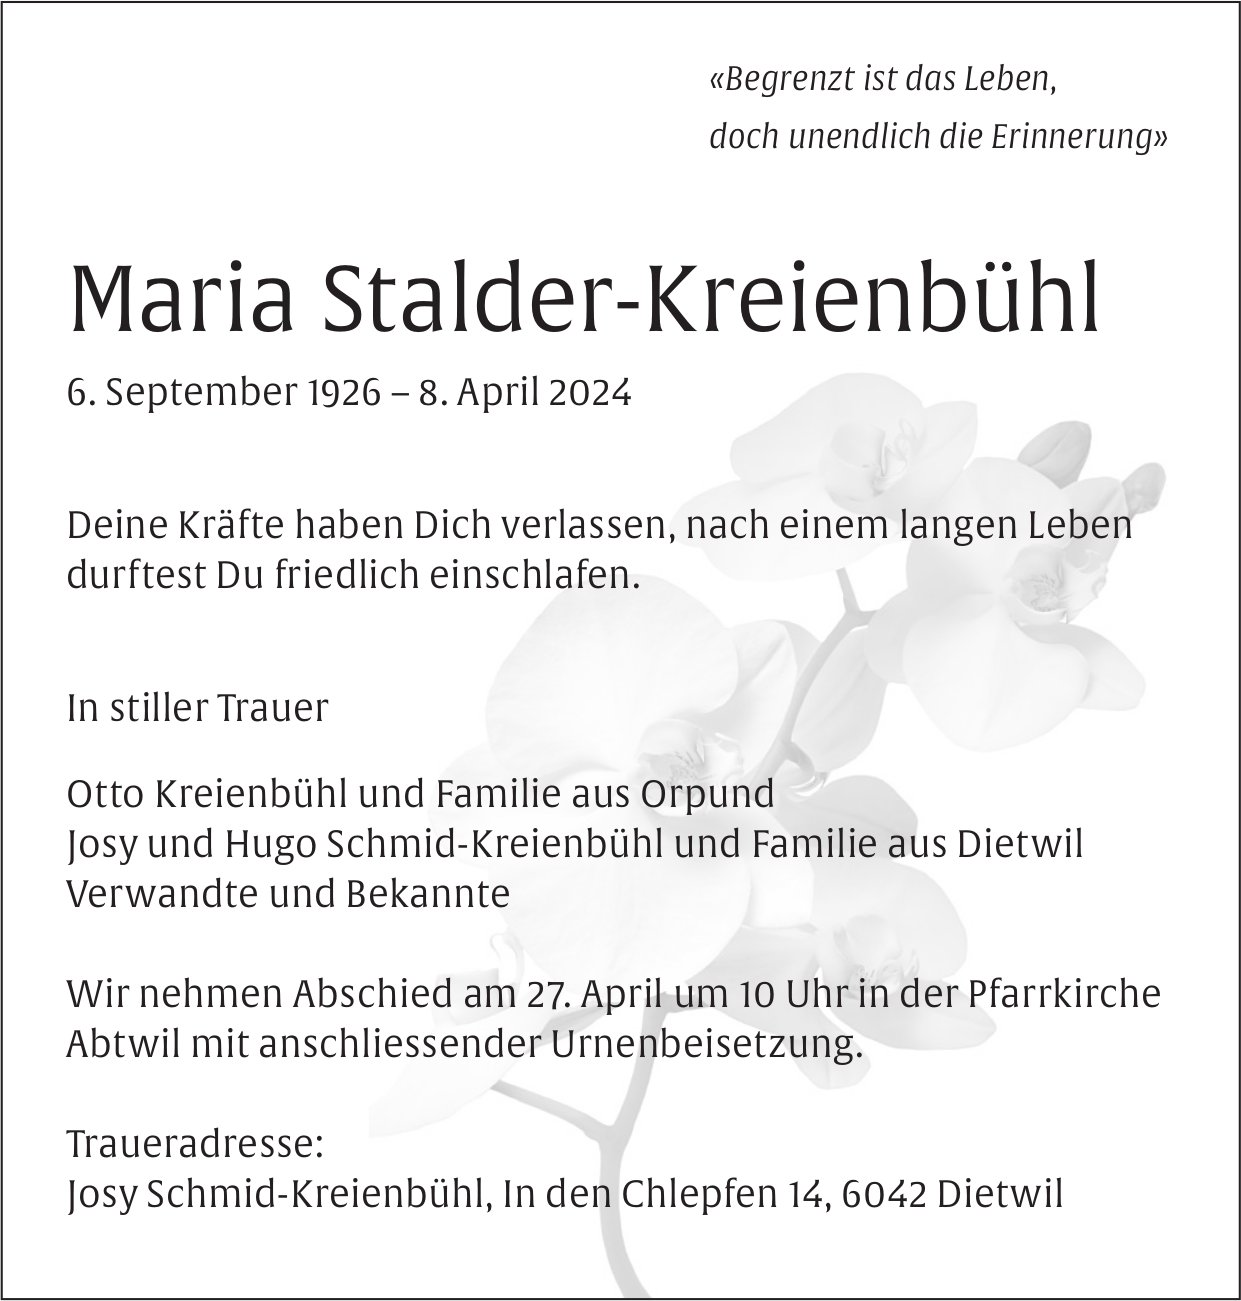 Stalder-Kreienbühl Maria, April 2024 / TA